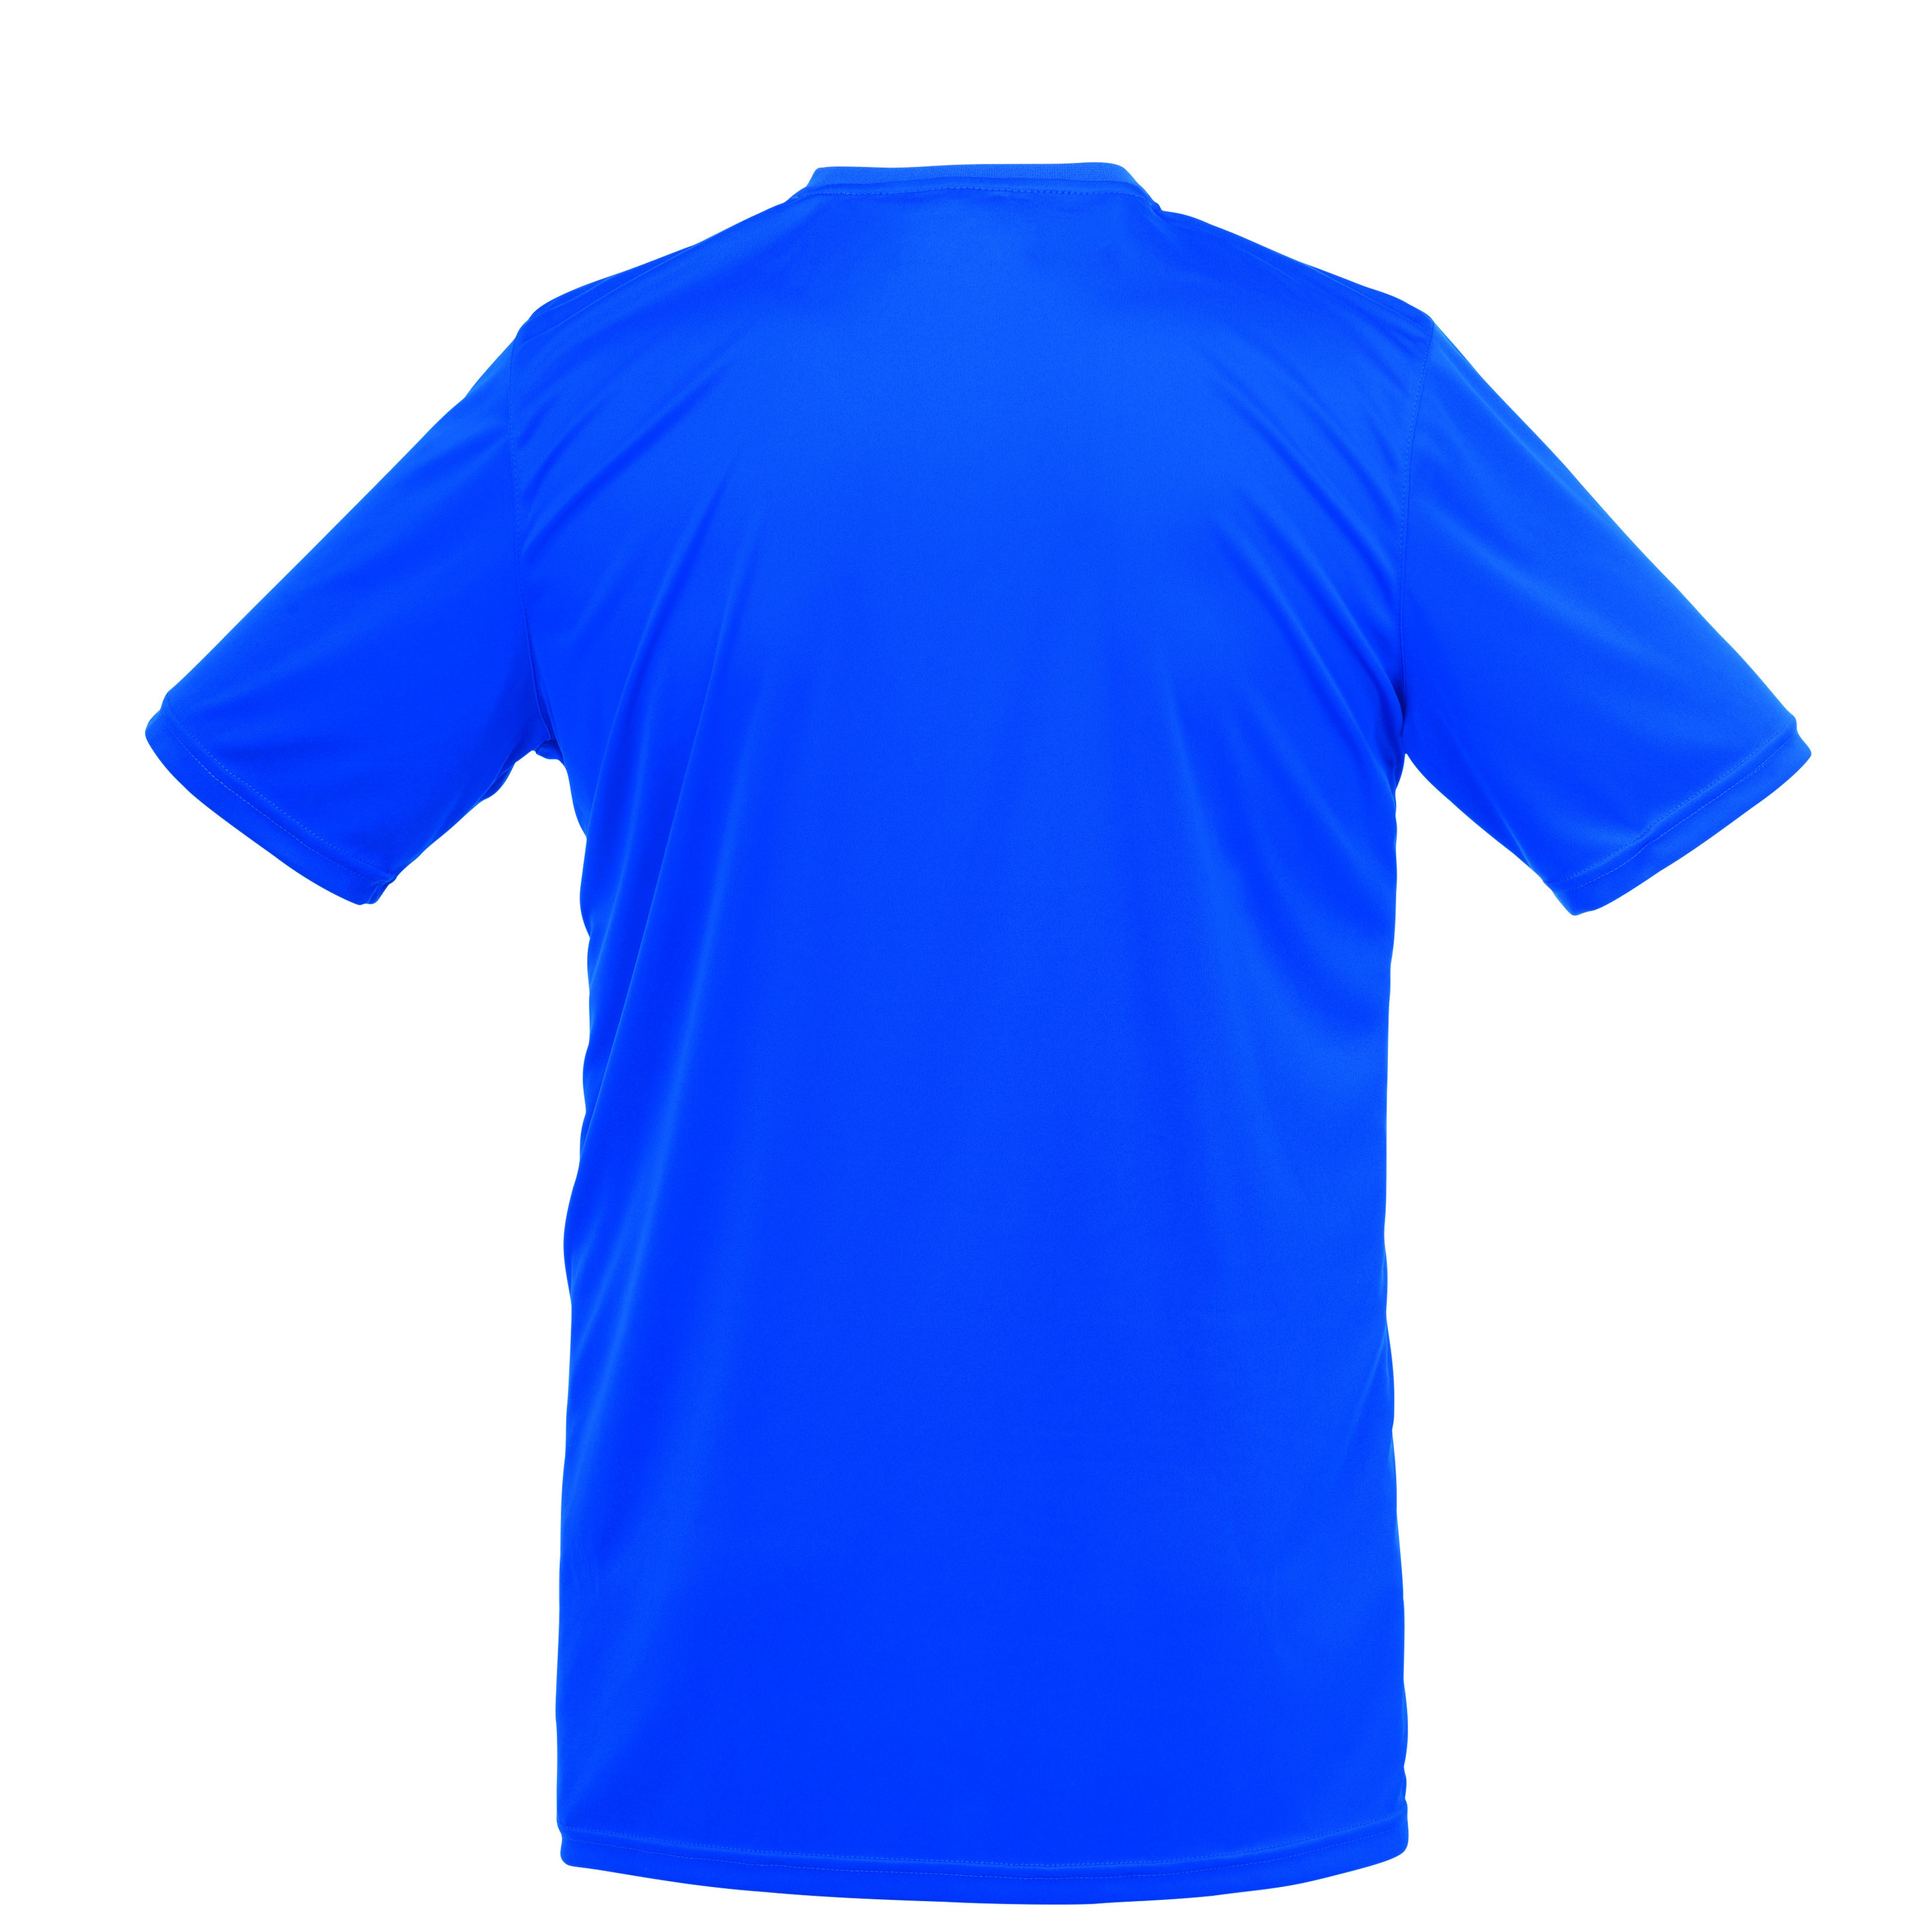 Stream 3.0 Camiseta Mc Azur/blanco Uhlsport